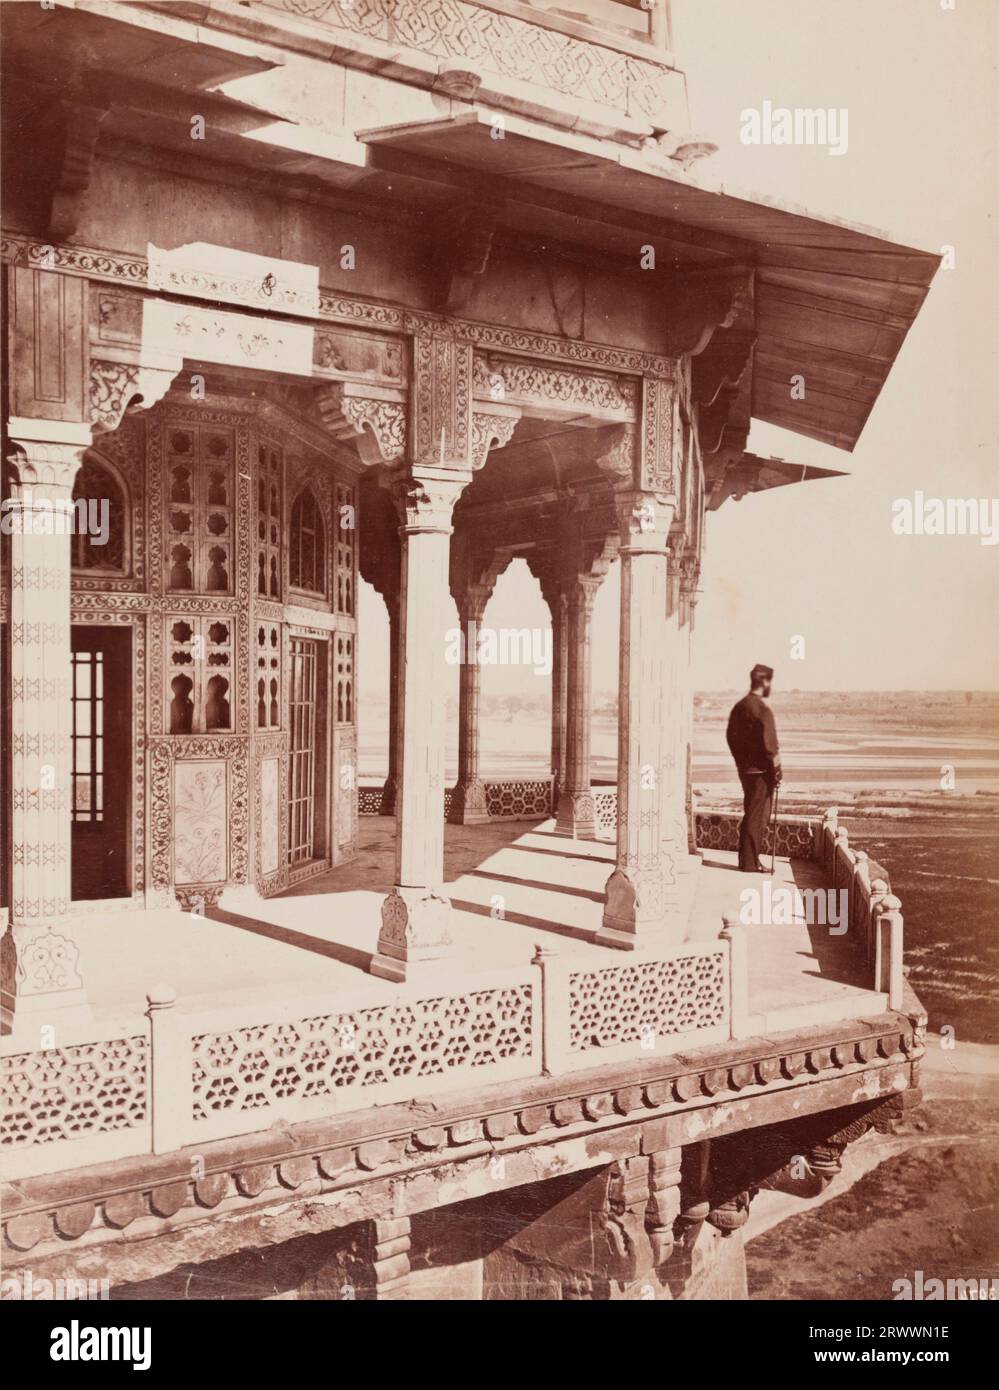 Eine Einzelperson blickt von einem Balkon auf den Samman Burj, einen achteckigen Turm, der in der Nähe der Diwan-e-Khas-Halle des Shah Jahan steht und sich im Agra Fort Komplex befindet. Die islamische Architektur ist kunstvoll im traditionellen Mogulstil dekoriert, mit organischen Motiven und geometrischem Design. Die Bildunterschrift lautet: Blick von den Wänden, Agra. Stockfoto